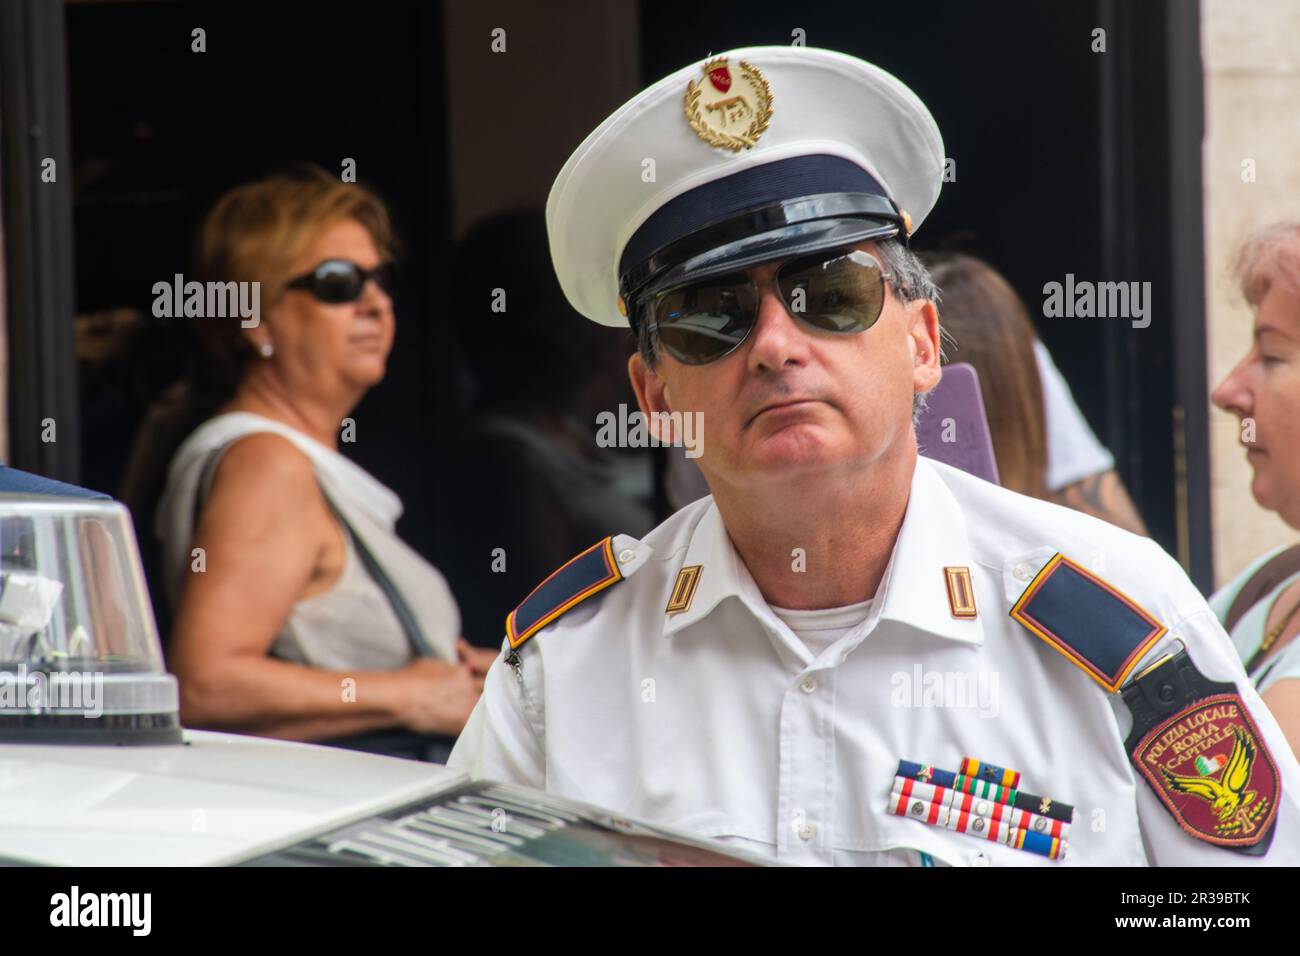 Oficial de policía del NYPD con gorra y gafas de sol apuntando a directores  en Manhattan, Nueva York, Estados Unidos de América Fotografía de stock -  Alamy